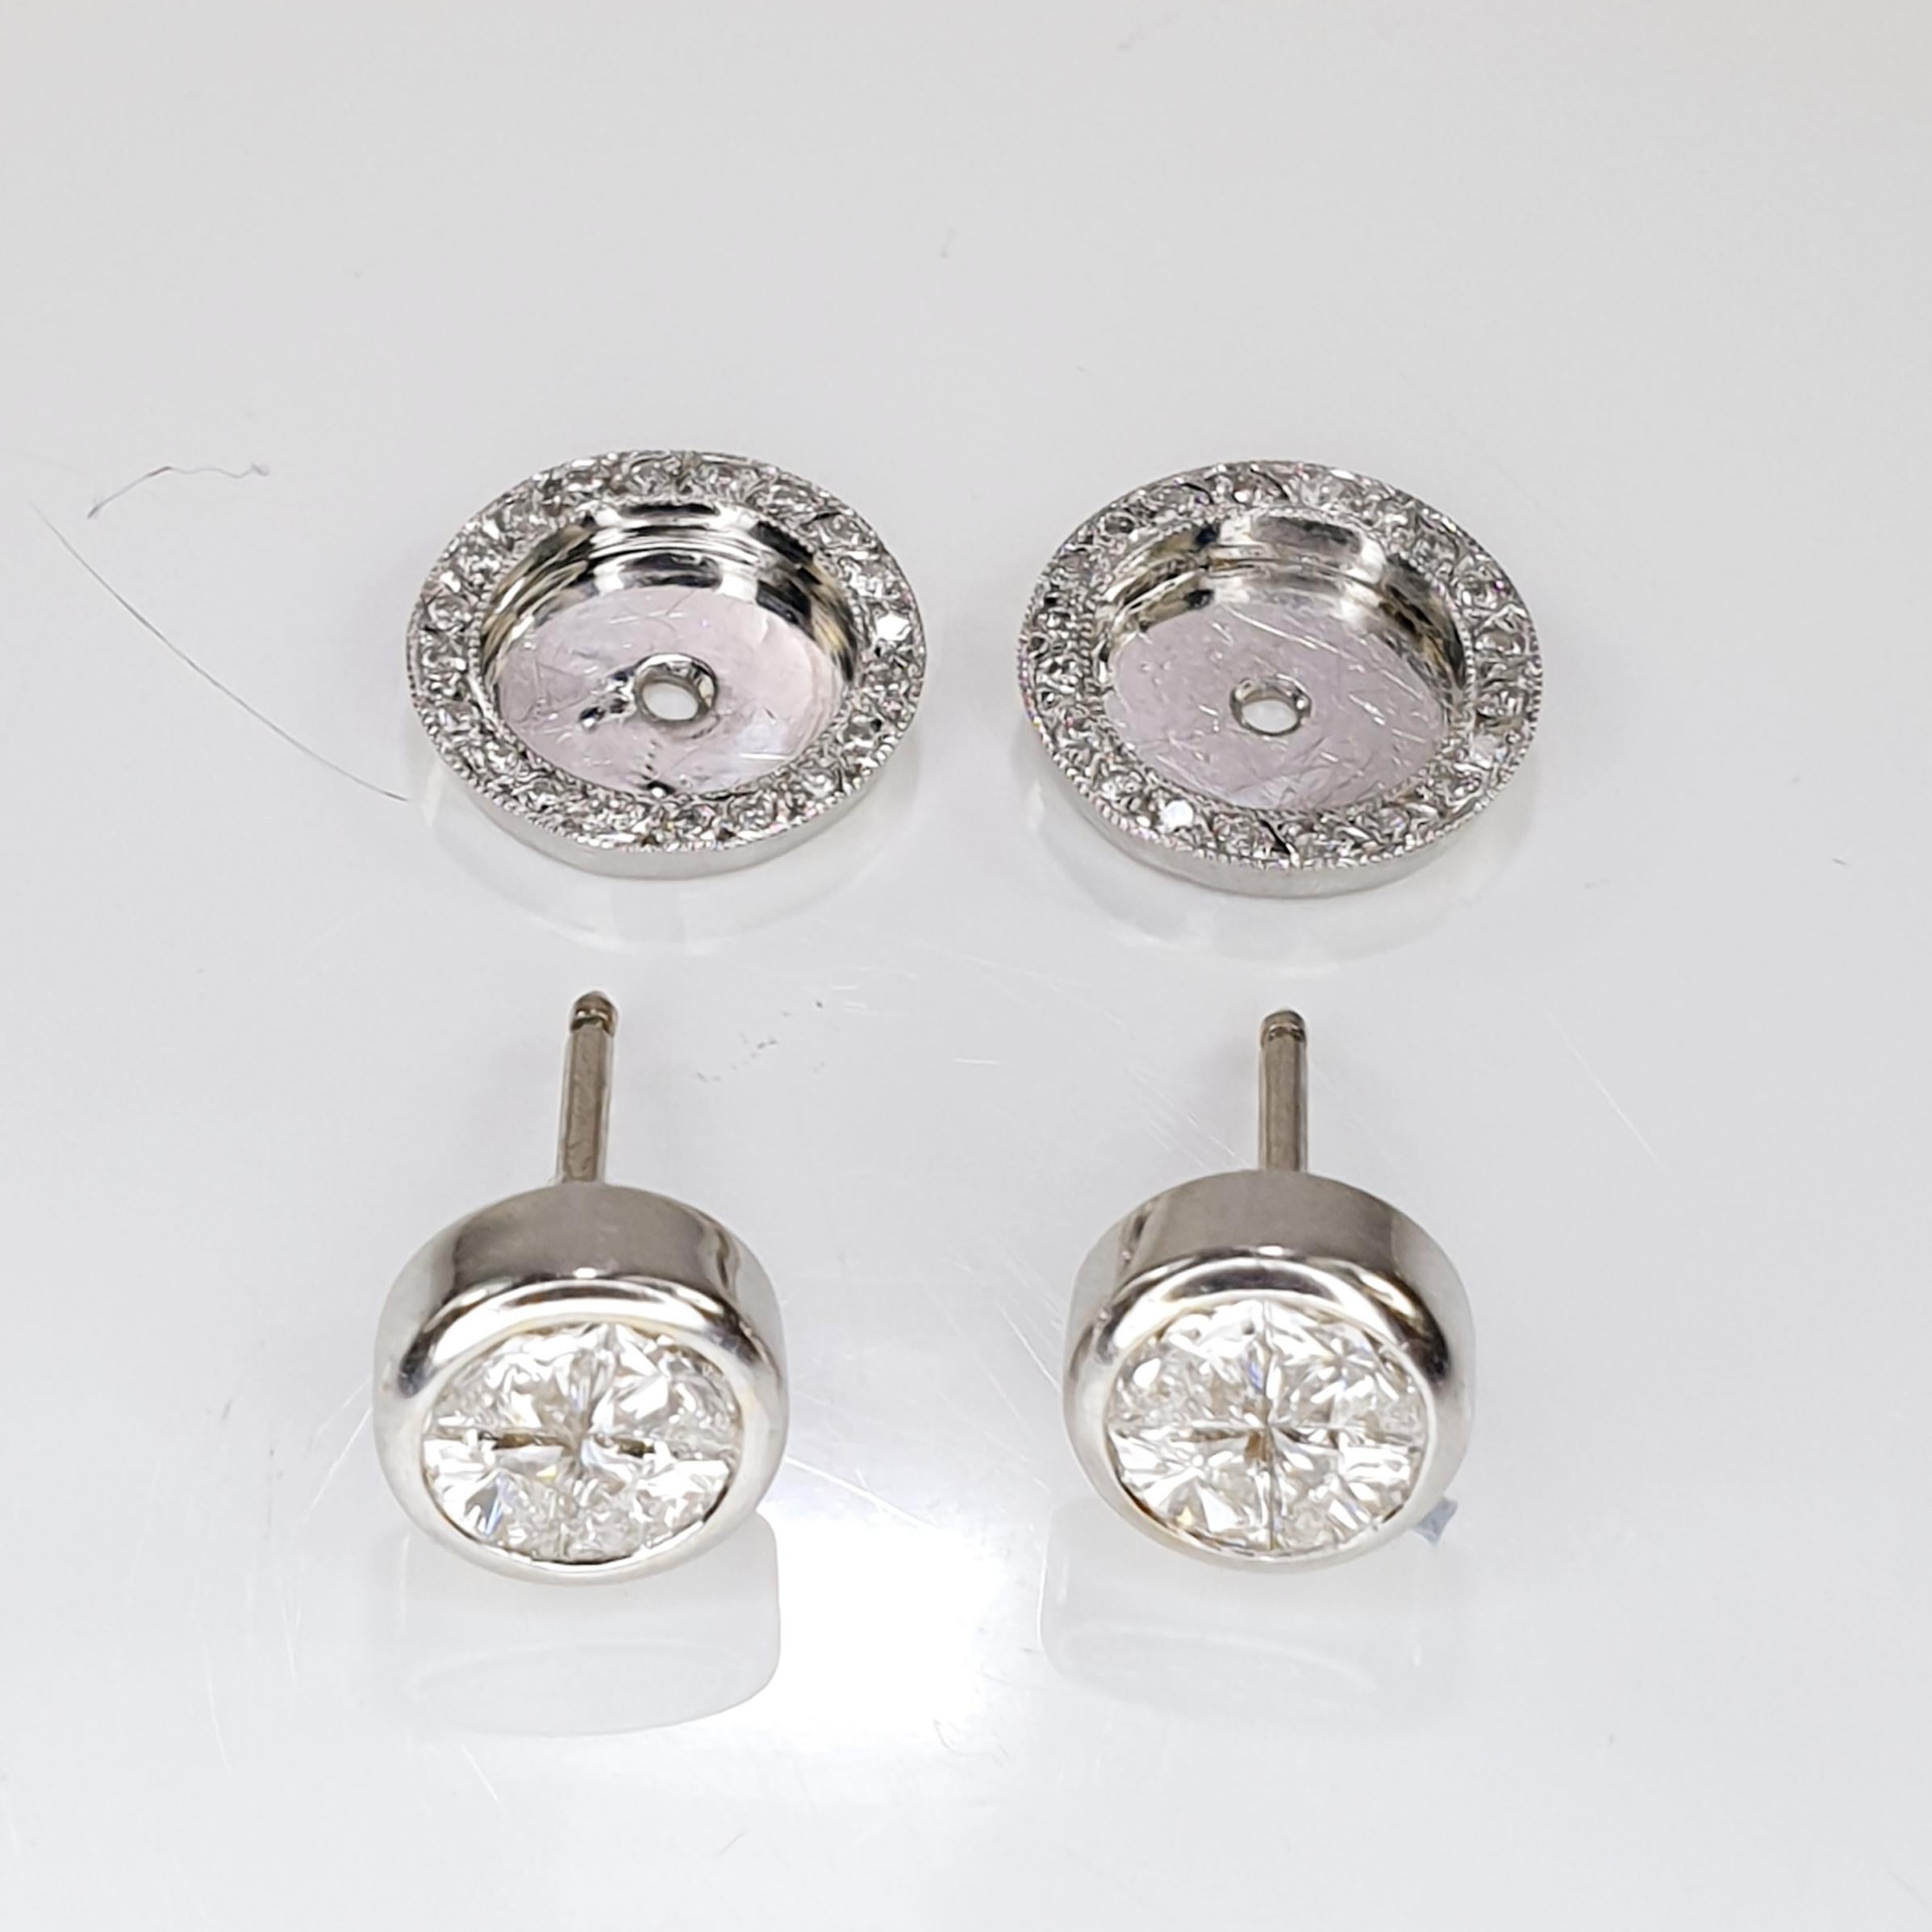 2 carat diamond earrings price in india